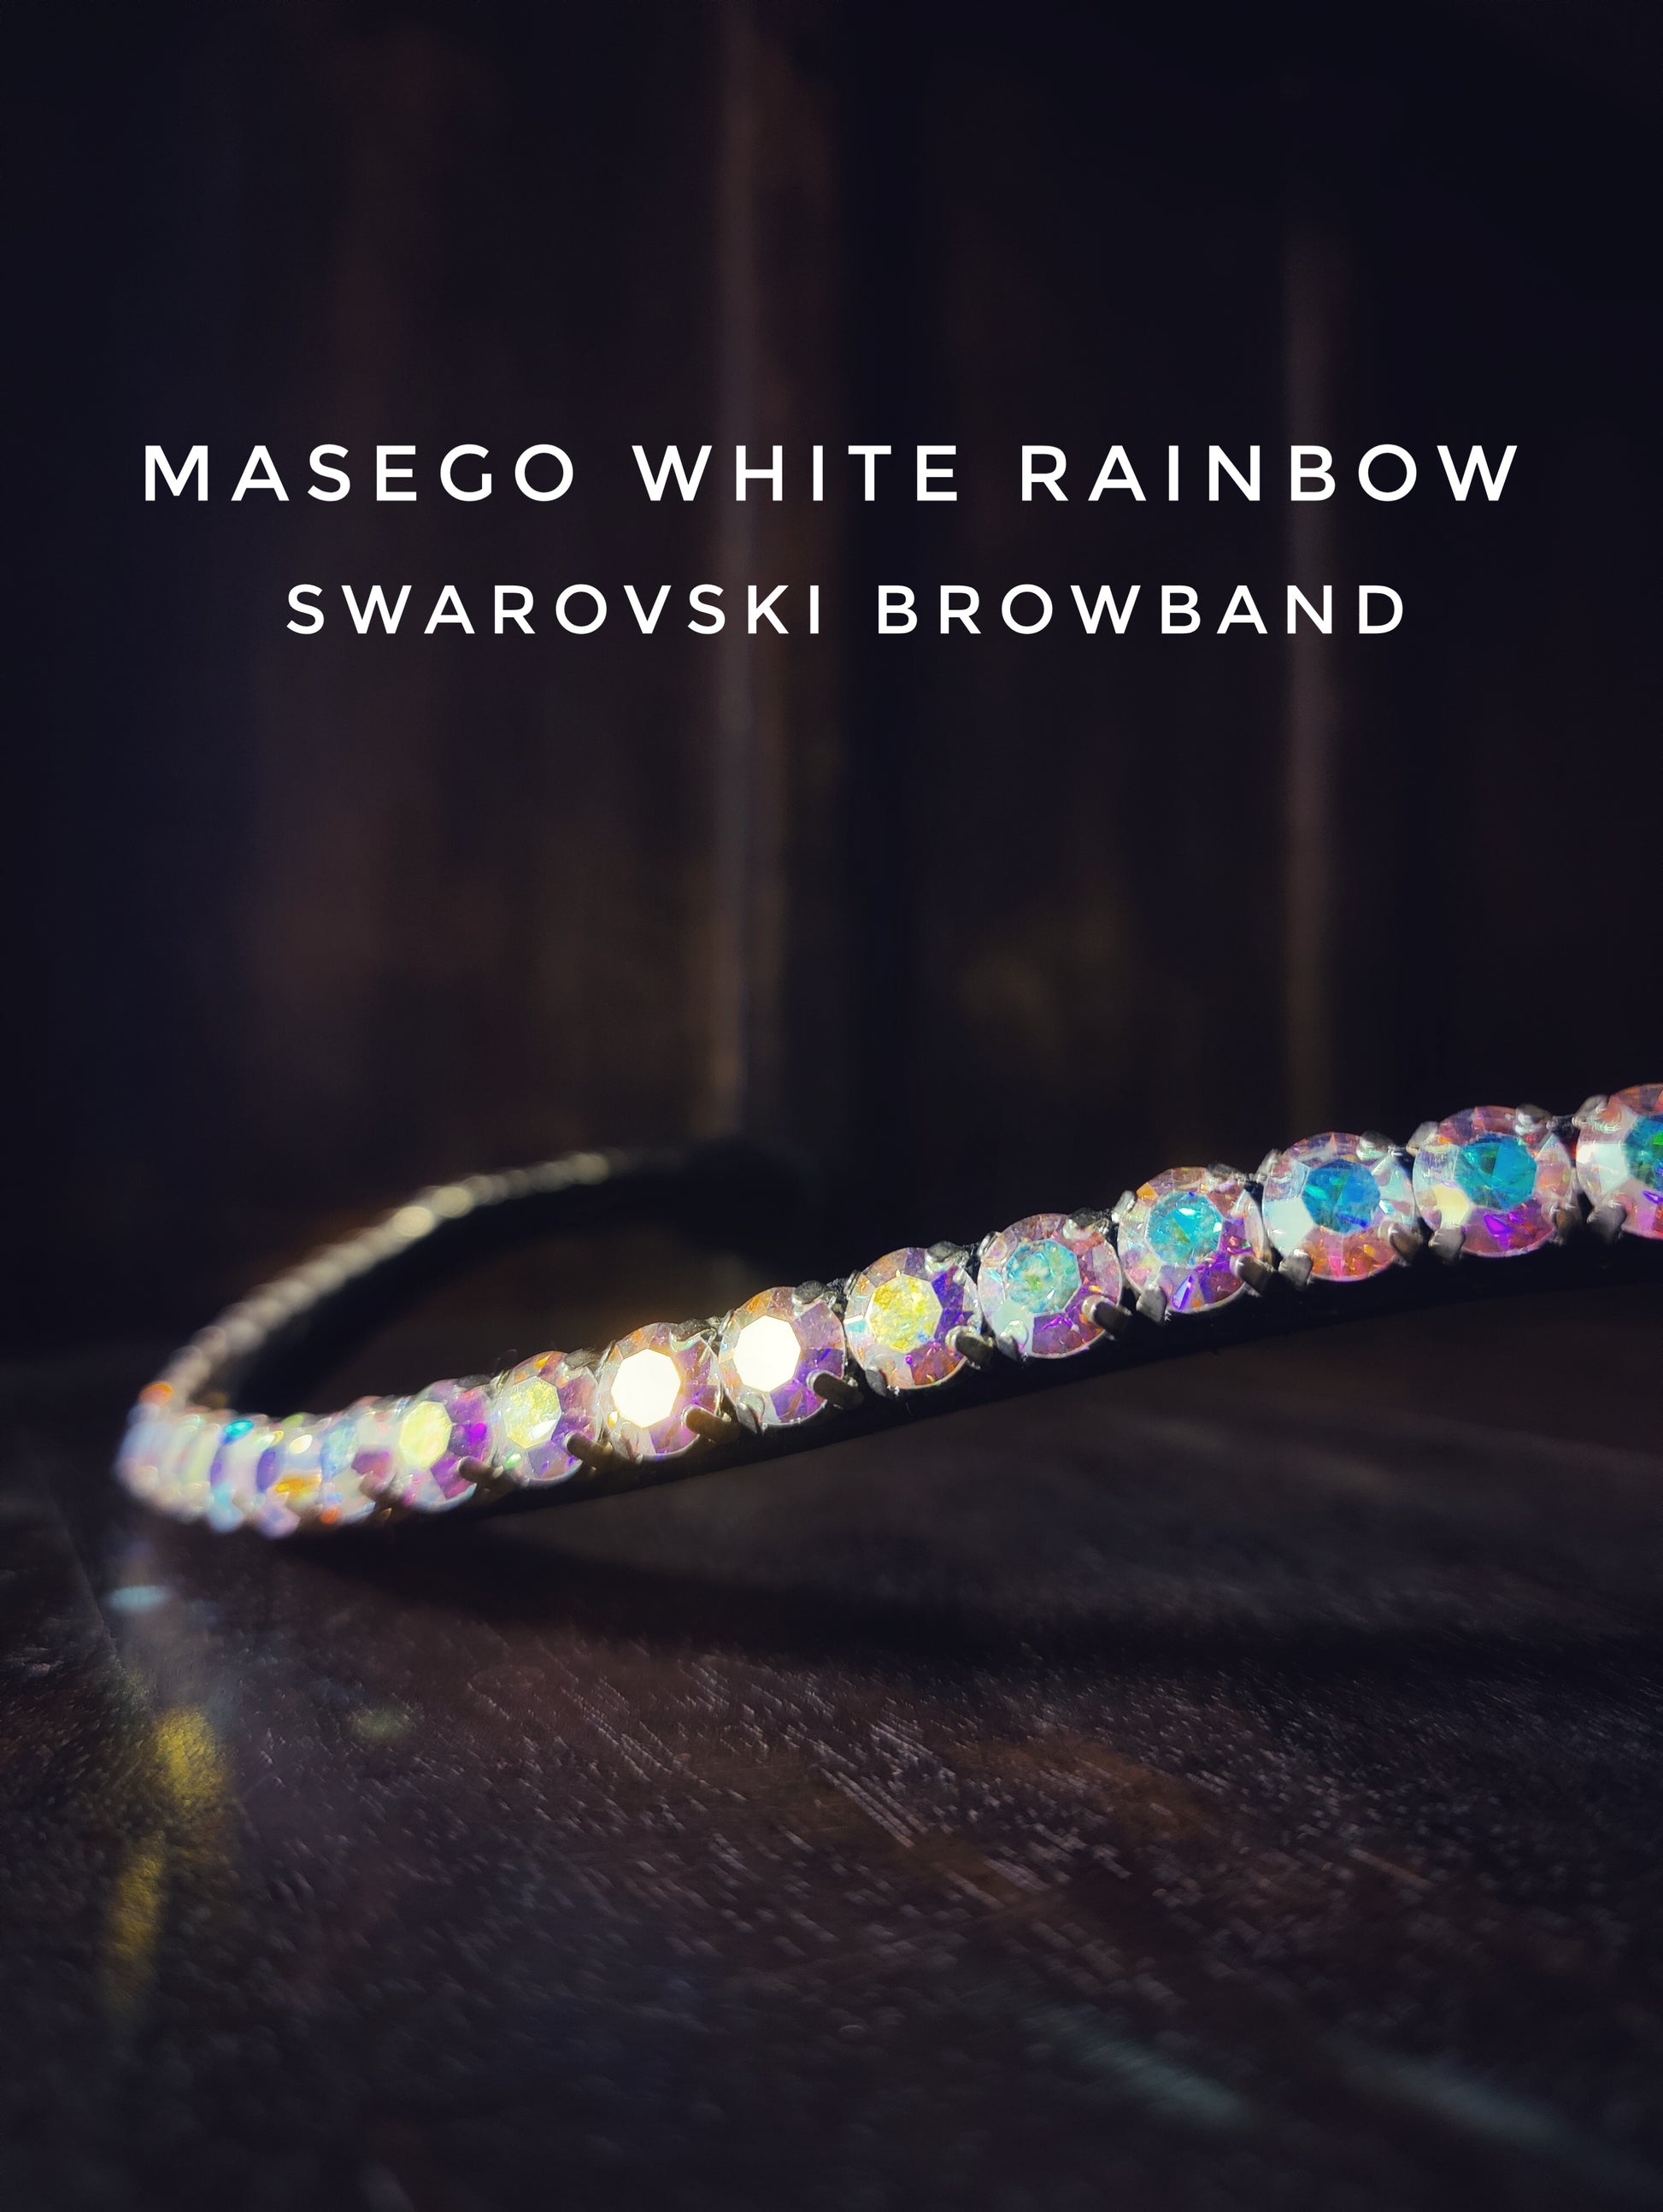 MASEGO white rainbow browband - MASEGO horsewear